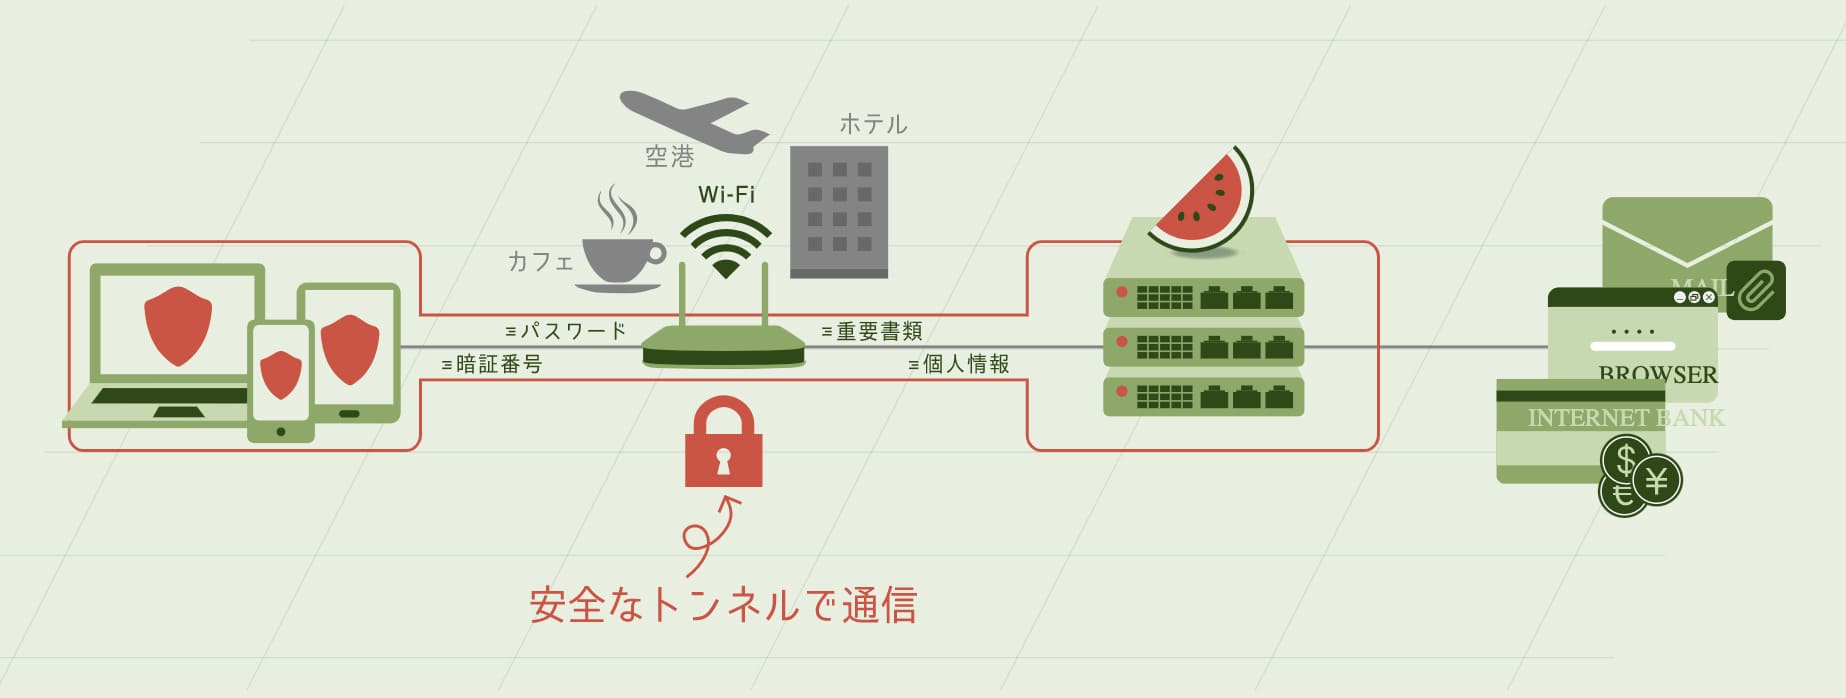 Suika VPNトンネルプロトコル